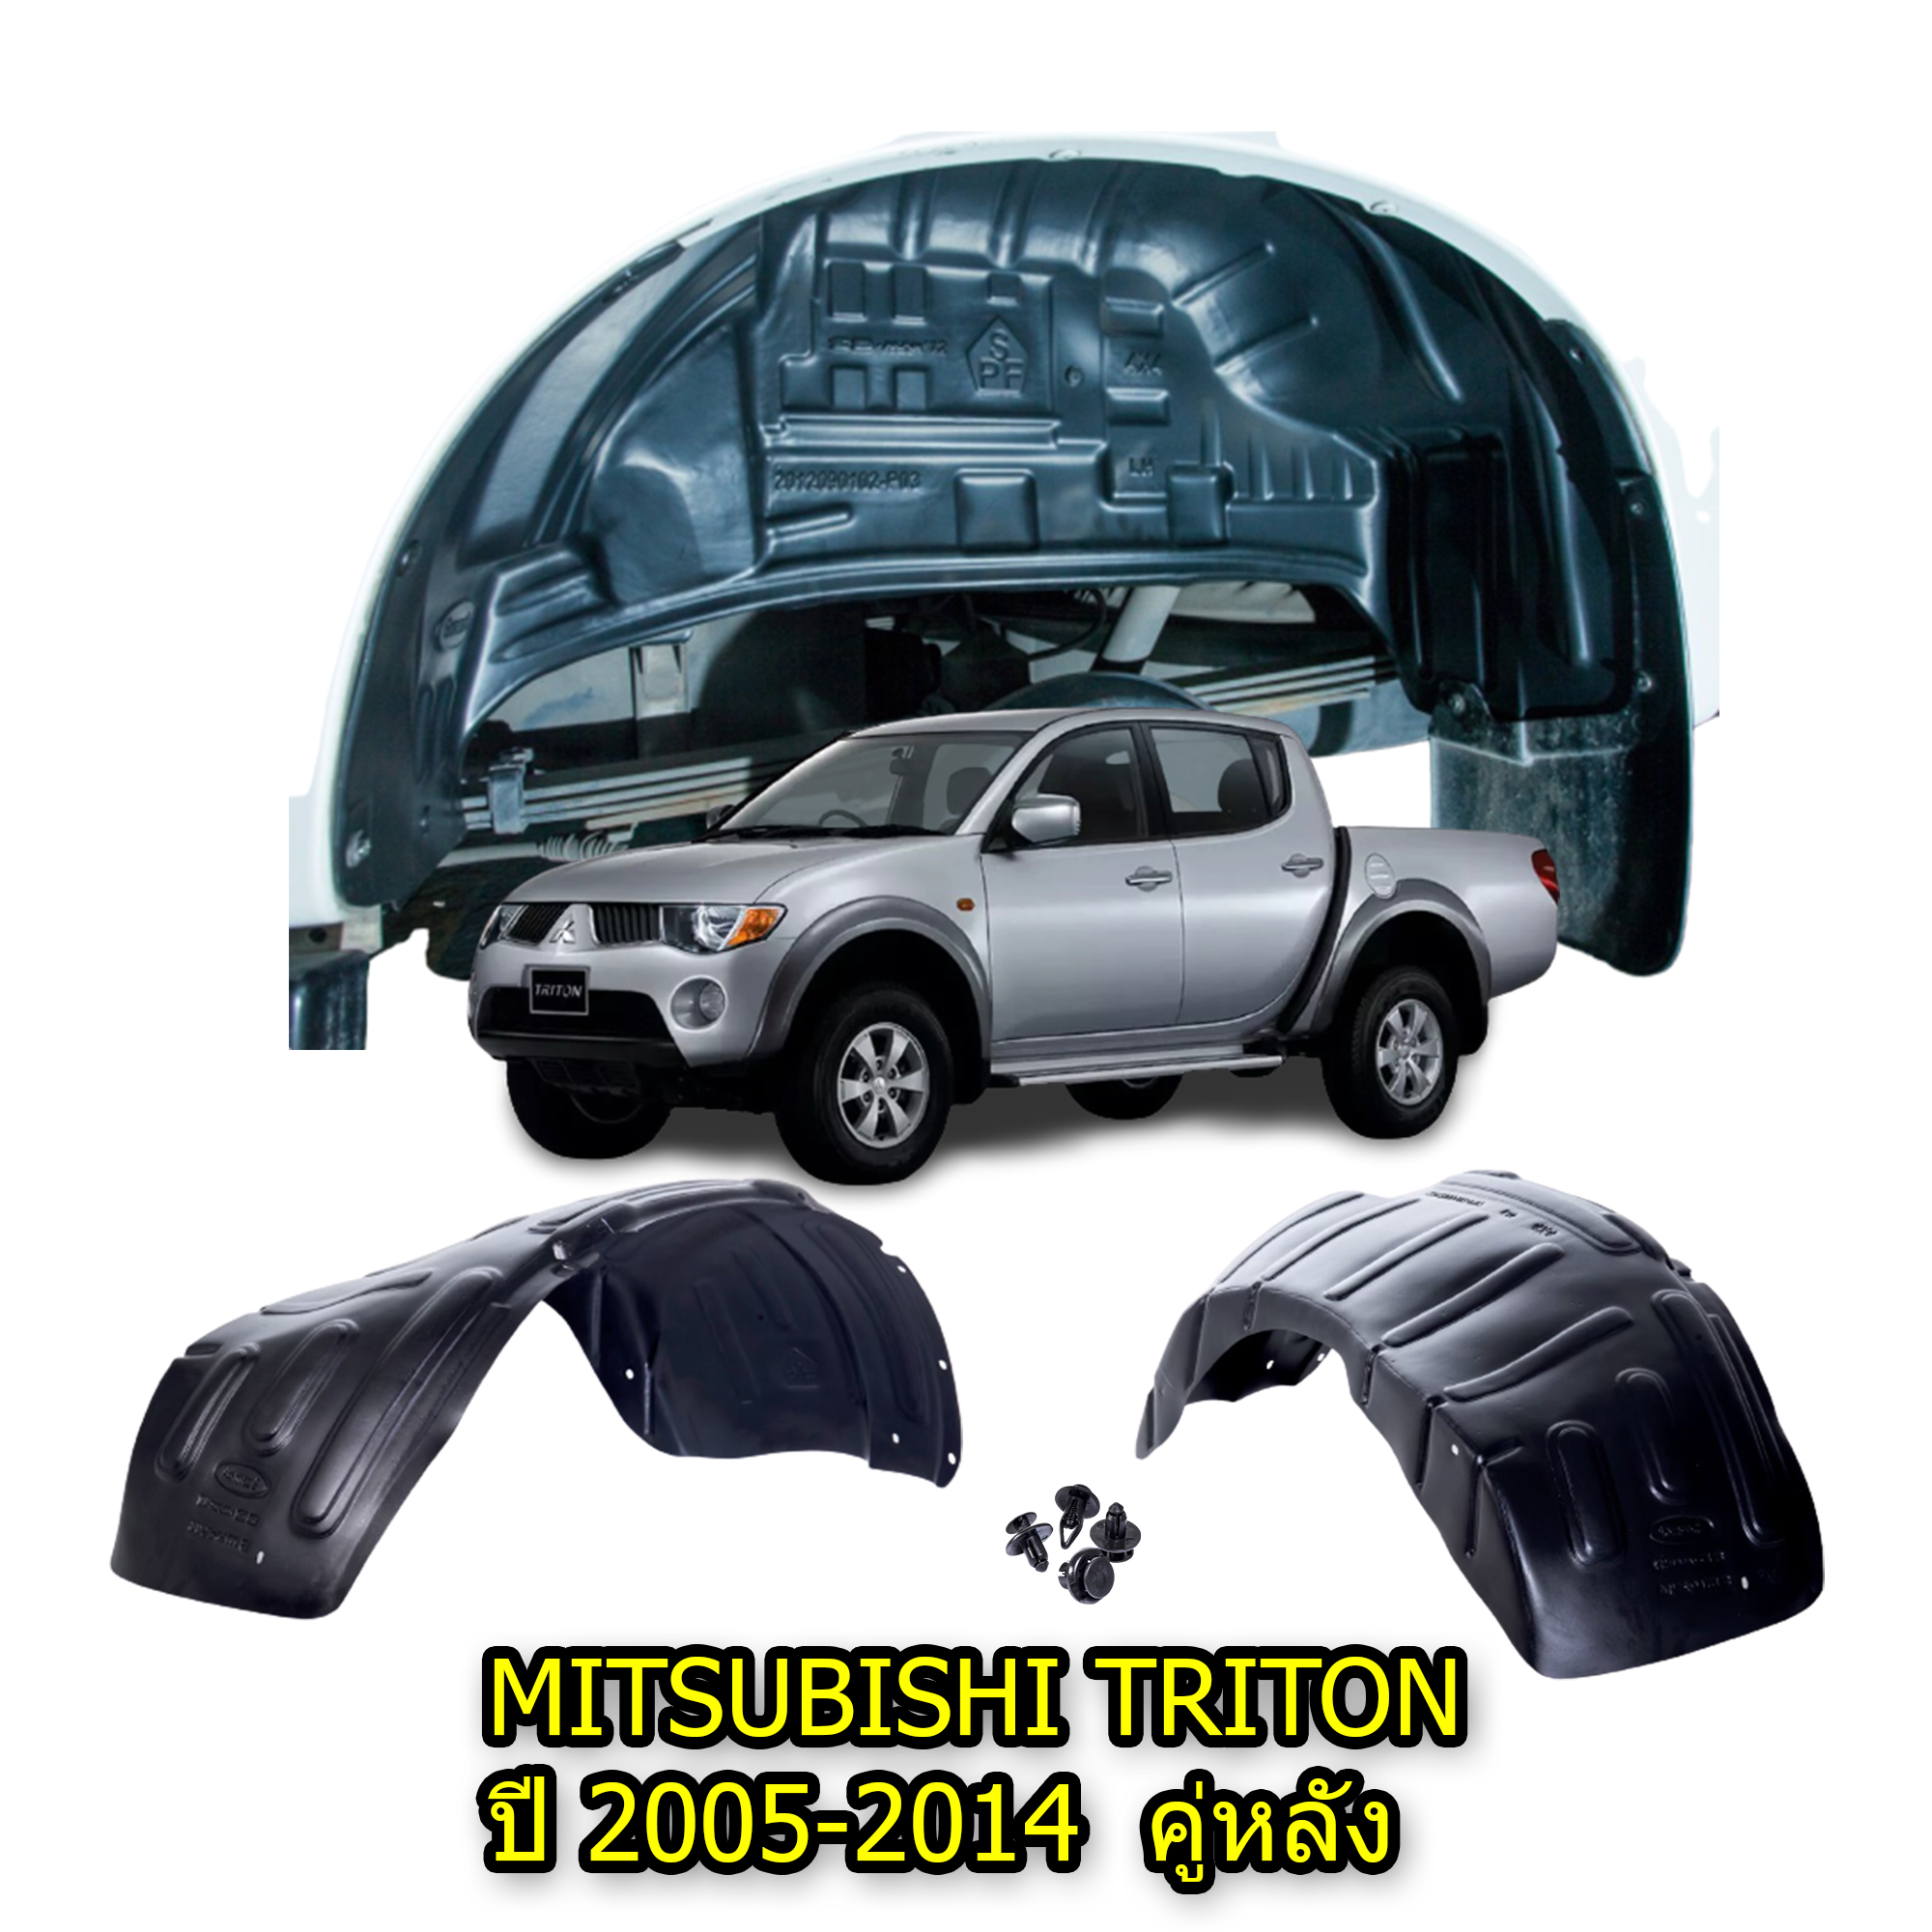 กันโคลนรถยนต์ MITSUBISHI TRITON ปี 2005-2014 (เฉพาะคู่หลัง) แบบคลิ๊ปล็อคไม่เจาะตัวรถ ซุ้มล้อพลาสติก บังโคลนพลาสติก กรุล้อ ซุ้มล้อ  กันโคลน บังโคลน